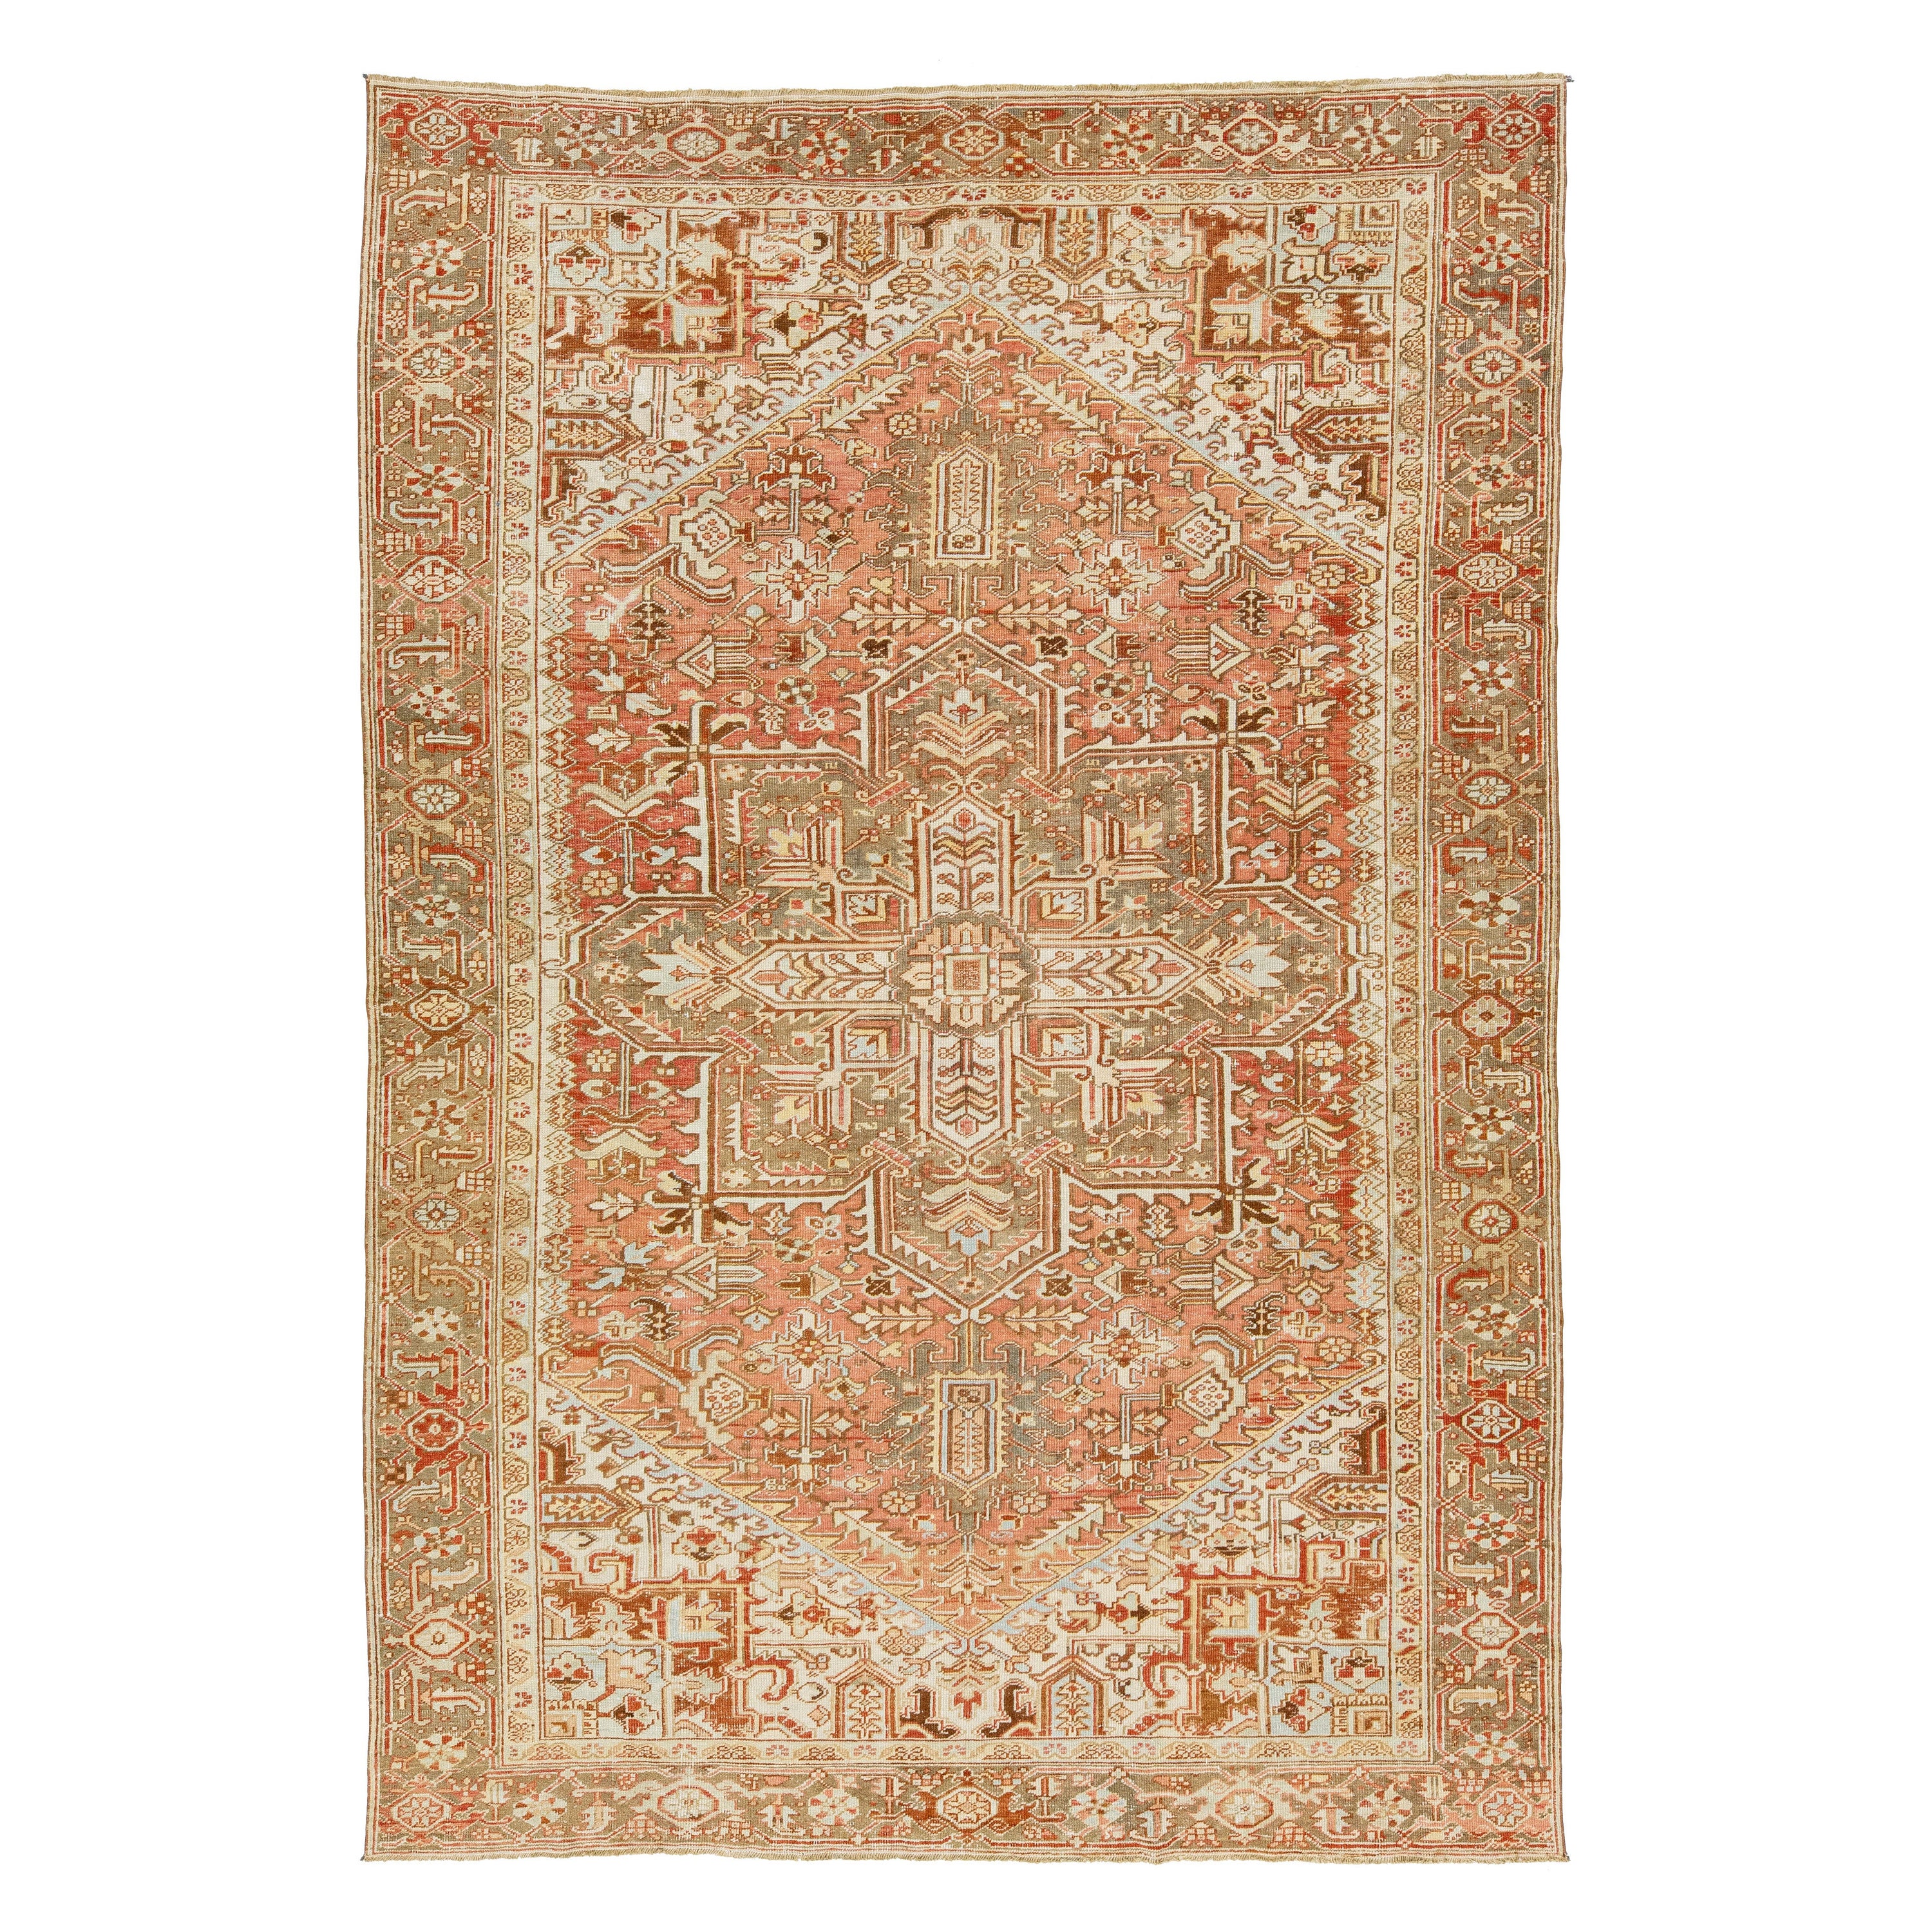 1920er Jahre Persisch Heriz Antike Wolle Teppich in Rost Farbe mit einem Medaillon Motiv